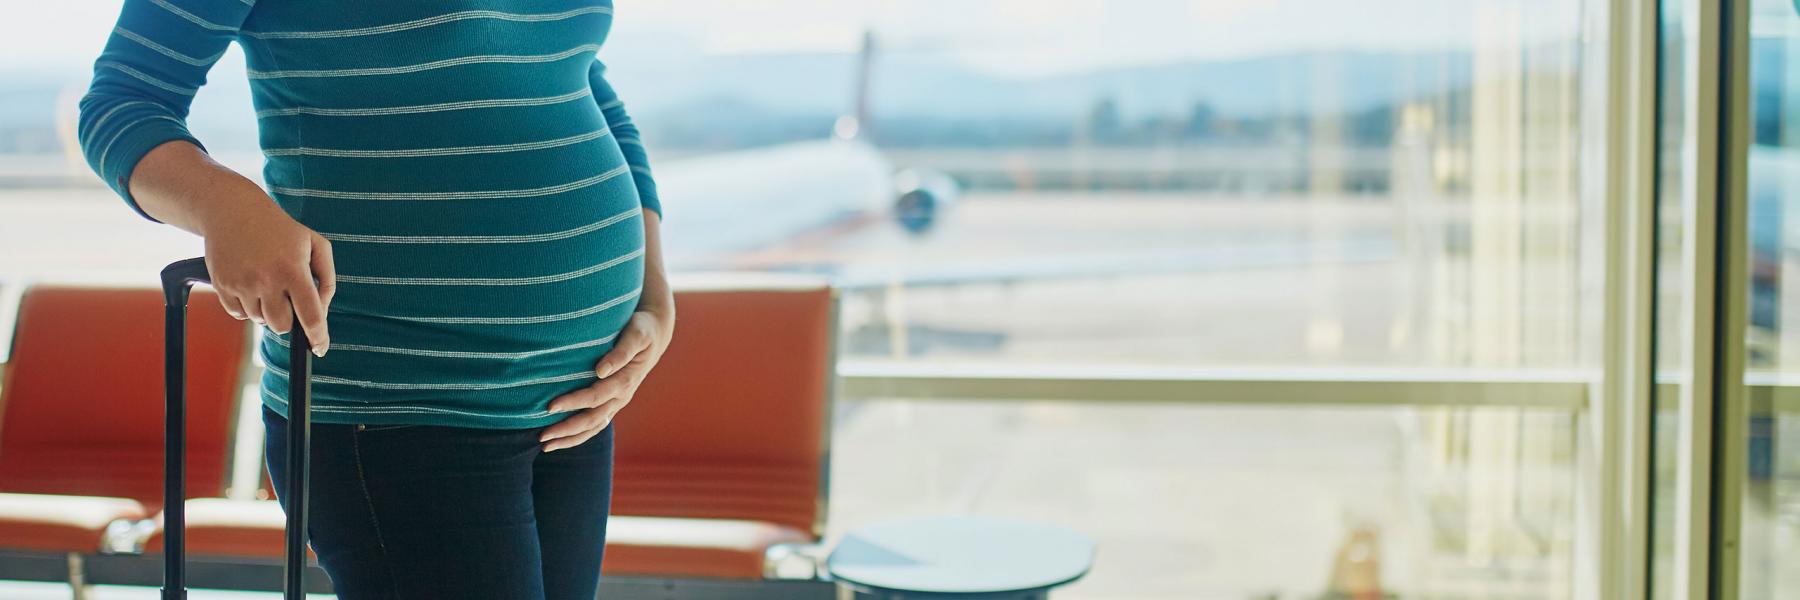 السفر أثناء الحمل... هل يمكن أن يؤدي للإجهاض وما هي الاحتياطات؟